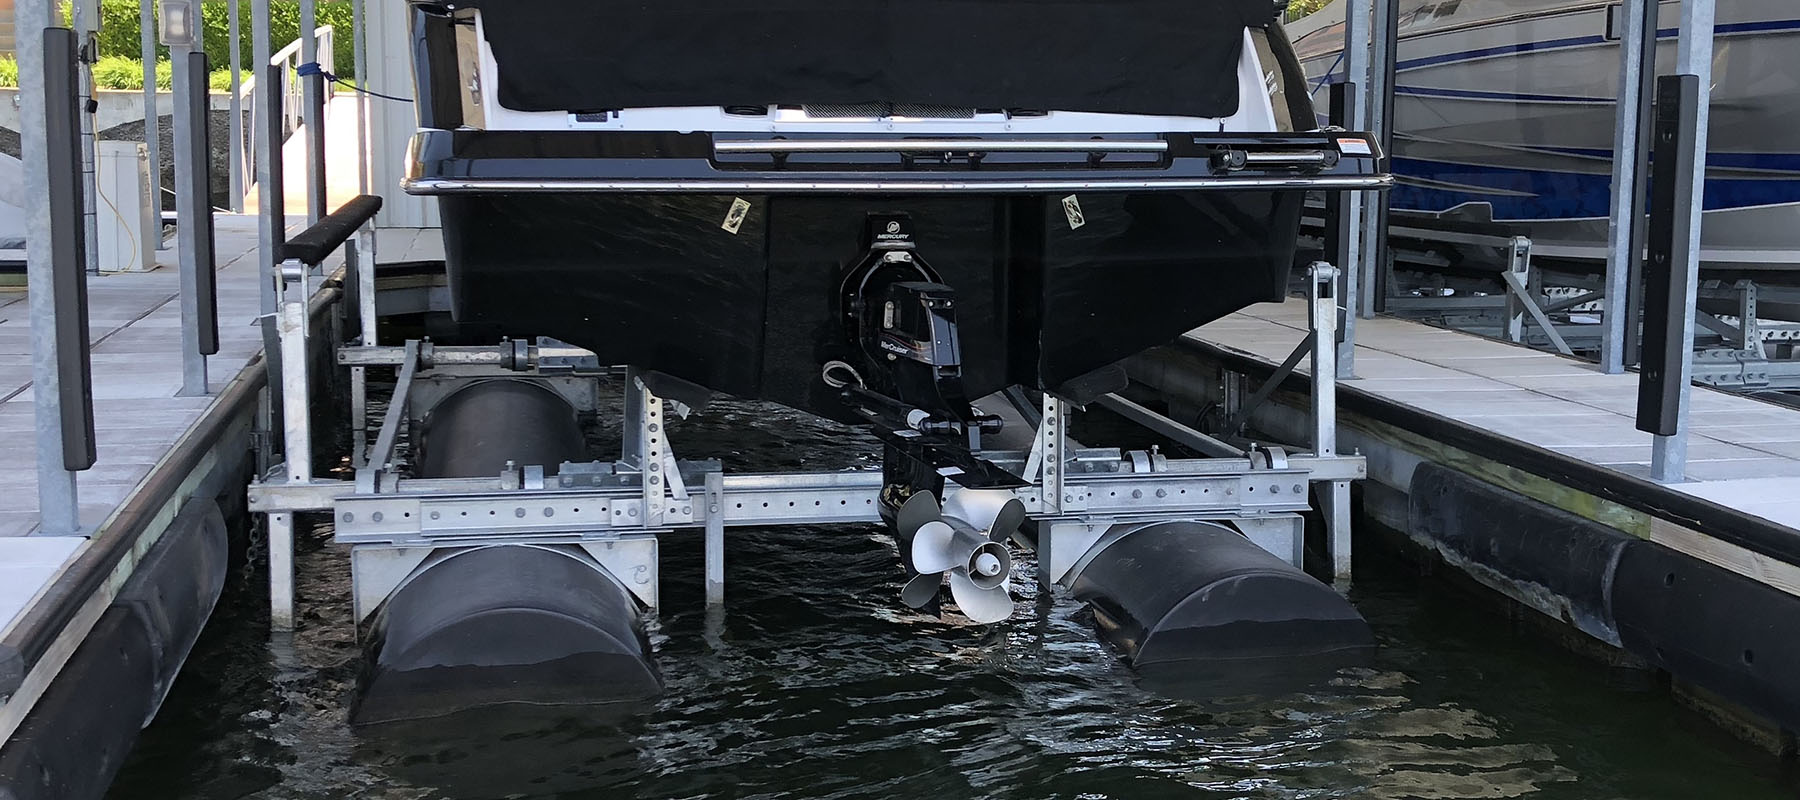 8,000 lb boat lift at the Lake of the Ozarks